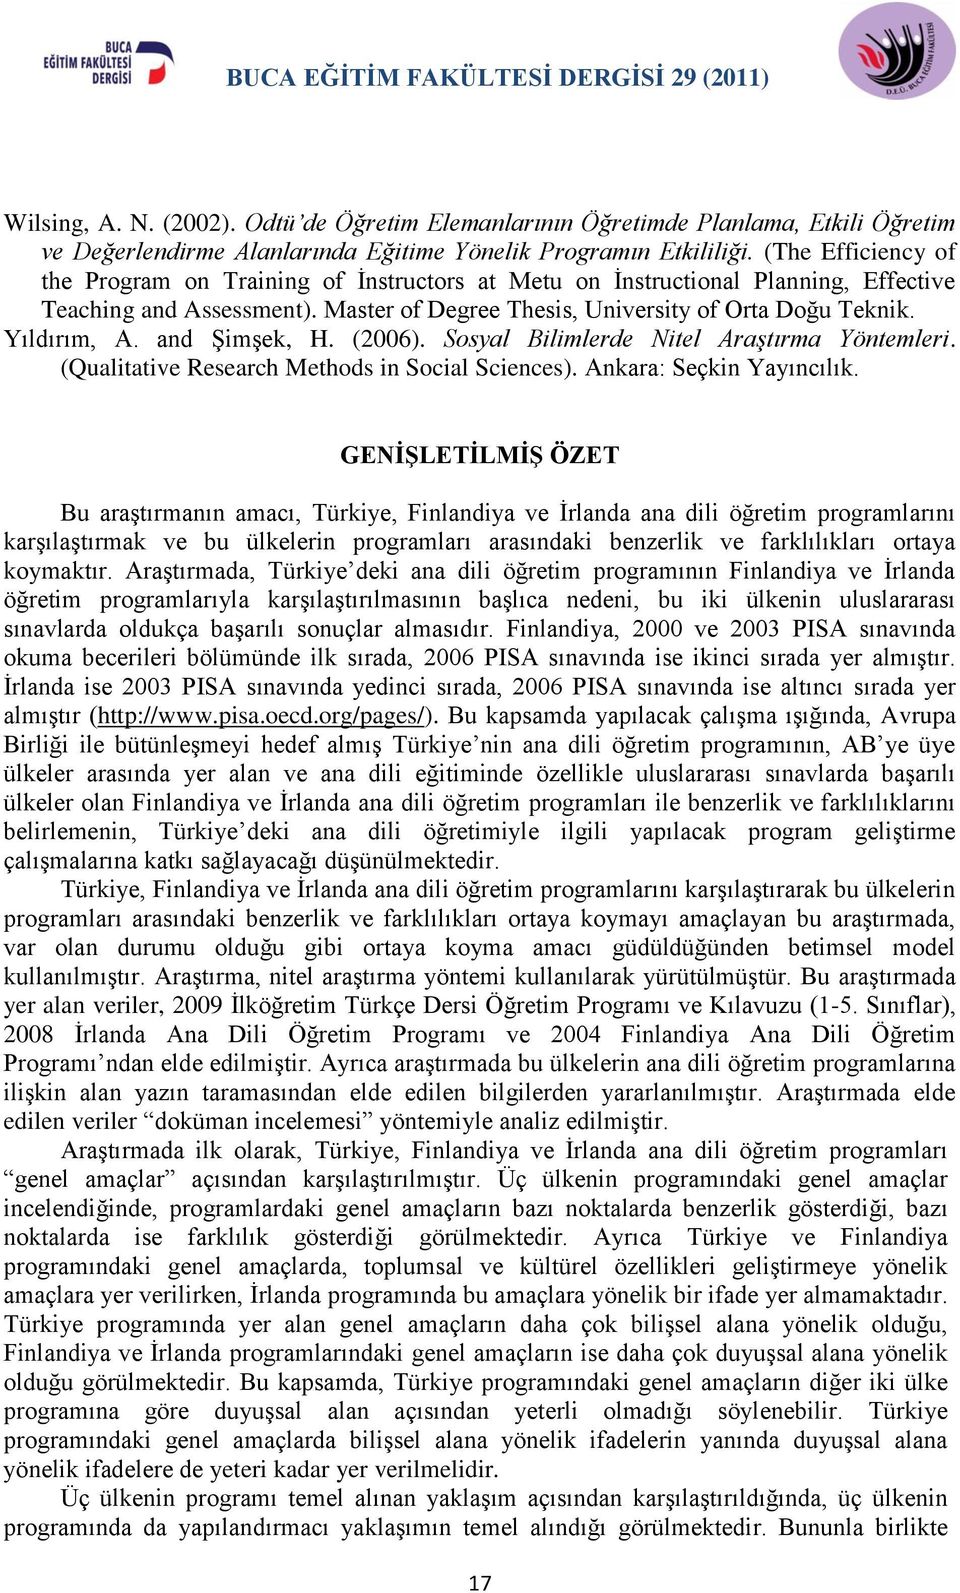 and Şimşek, H. (2006). Sosyal Bilimlerde Nitel Araştırma Yöntemleri. (Qualitative Research Methods in Social Sciences). Ankara: Seçkin Yayıncılık.